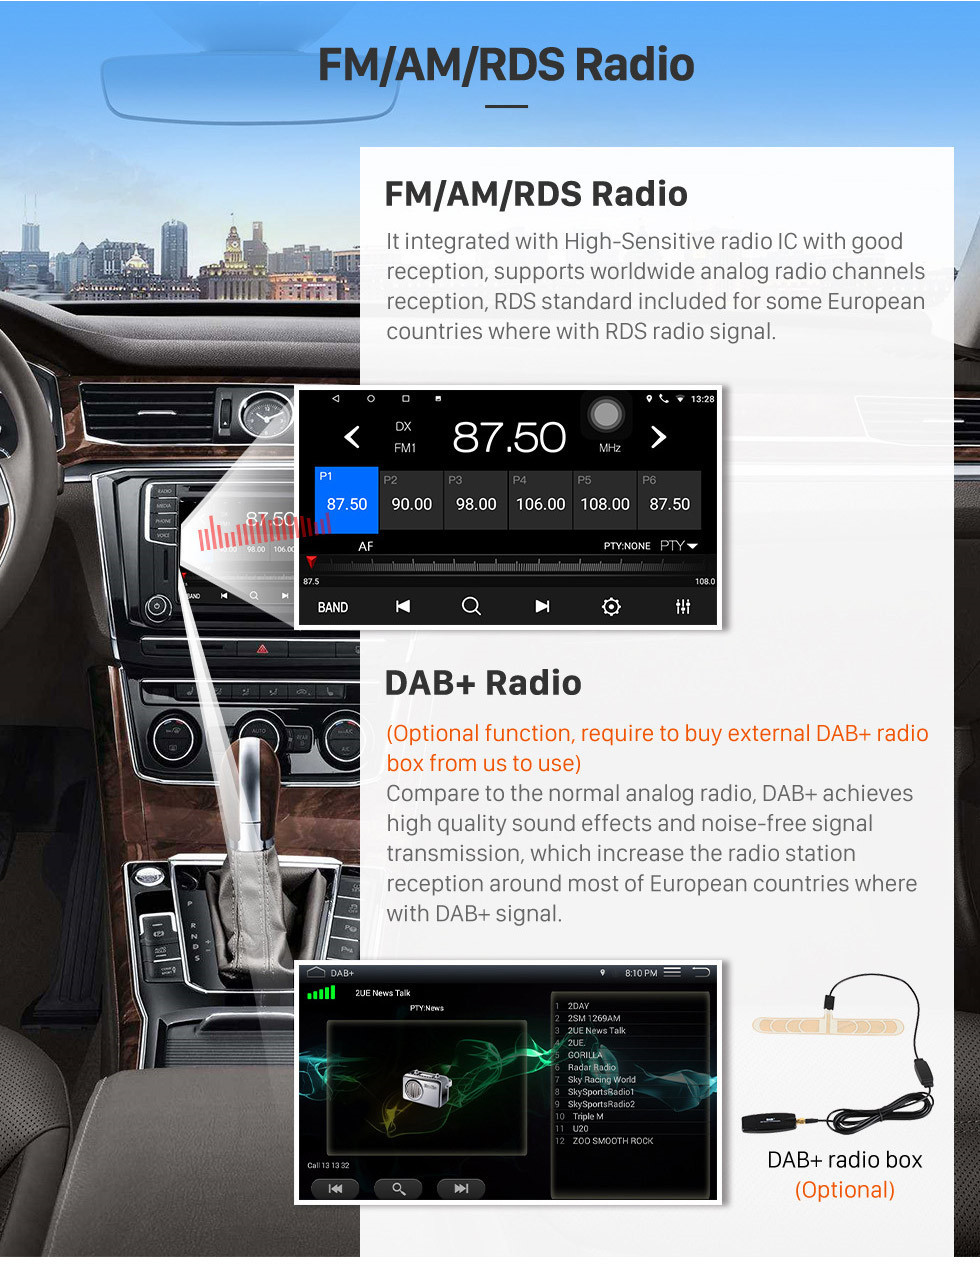 Seicane OEM 9 pouces Android 10.0 Radio pour 2019 Suzuki Wagon-R Bluetooth WIFI HD Écran tactile GPS Navigation soutien Carplay DVR OBD caméra de recul